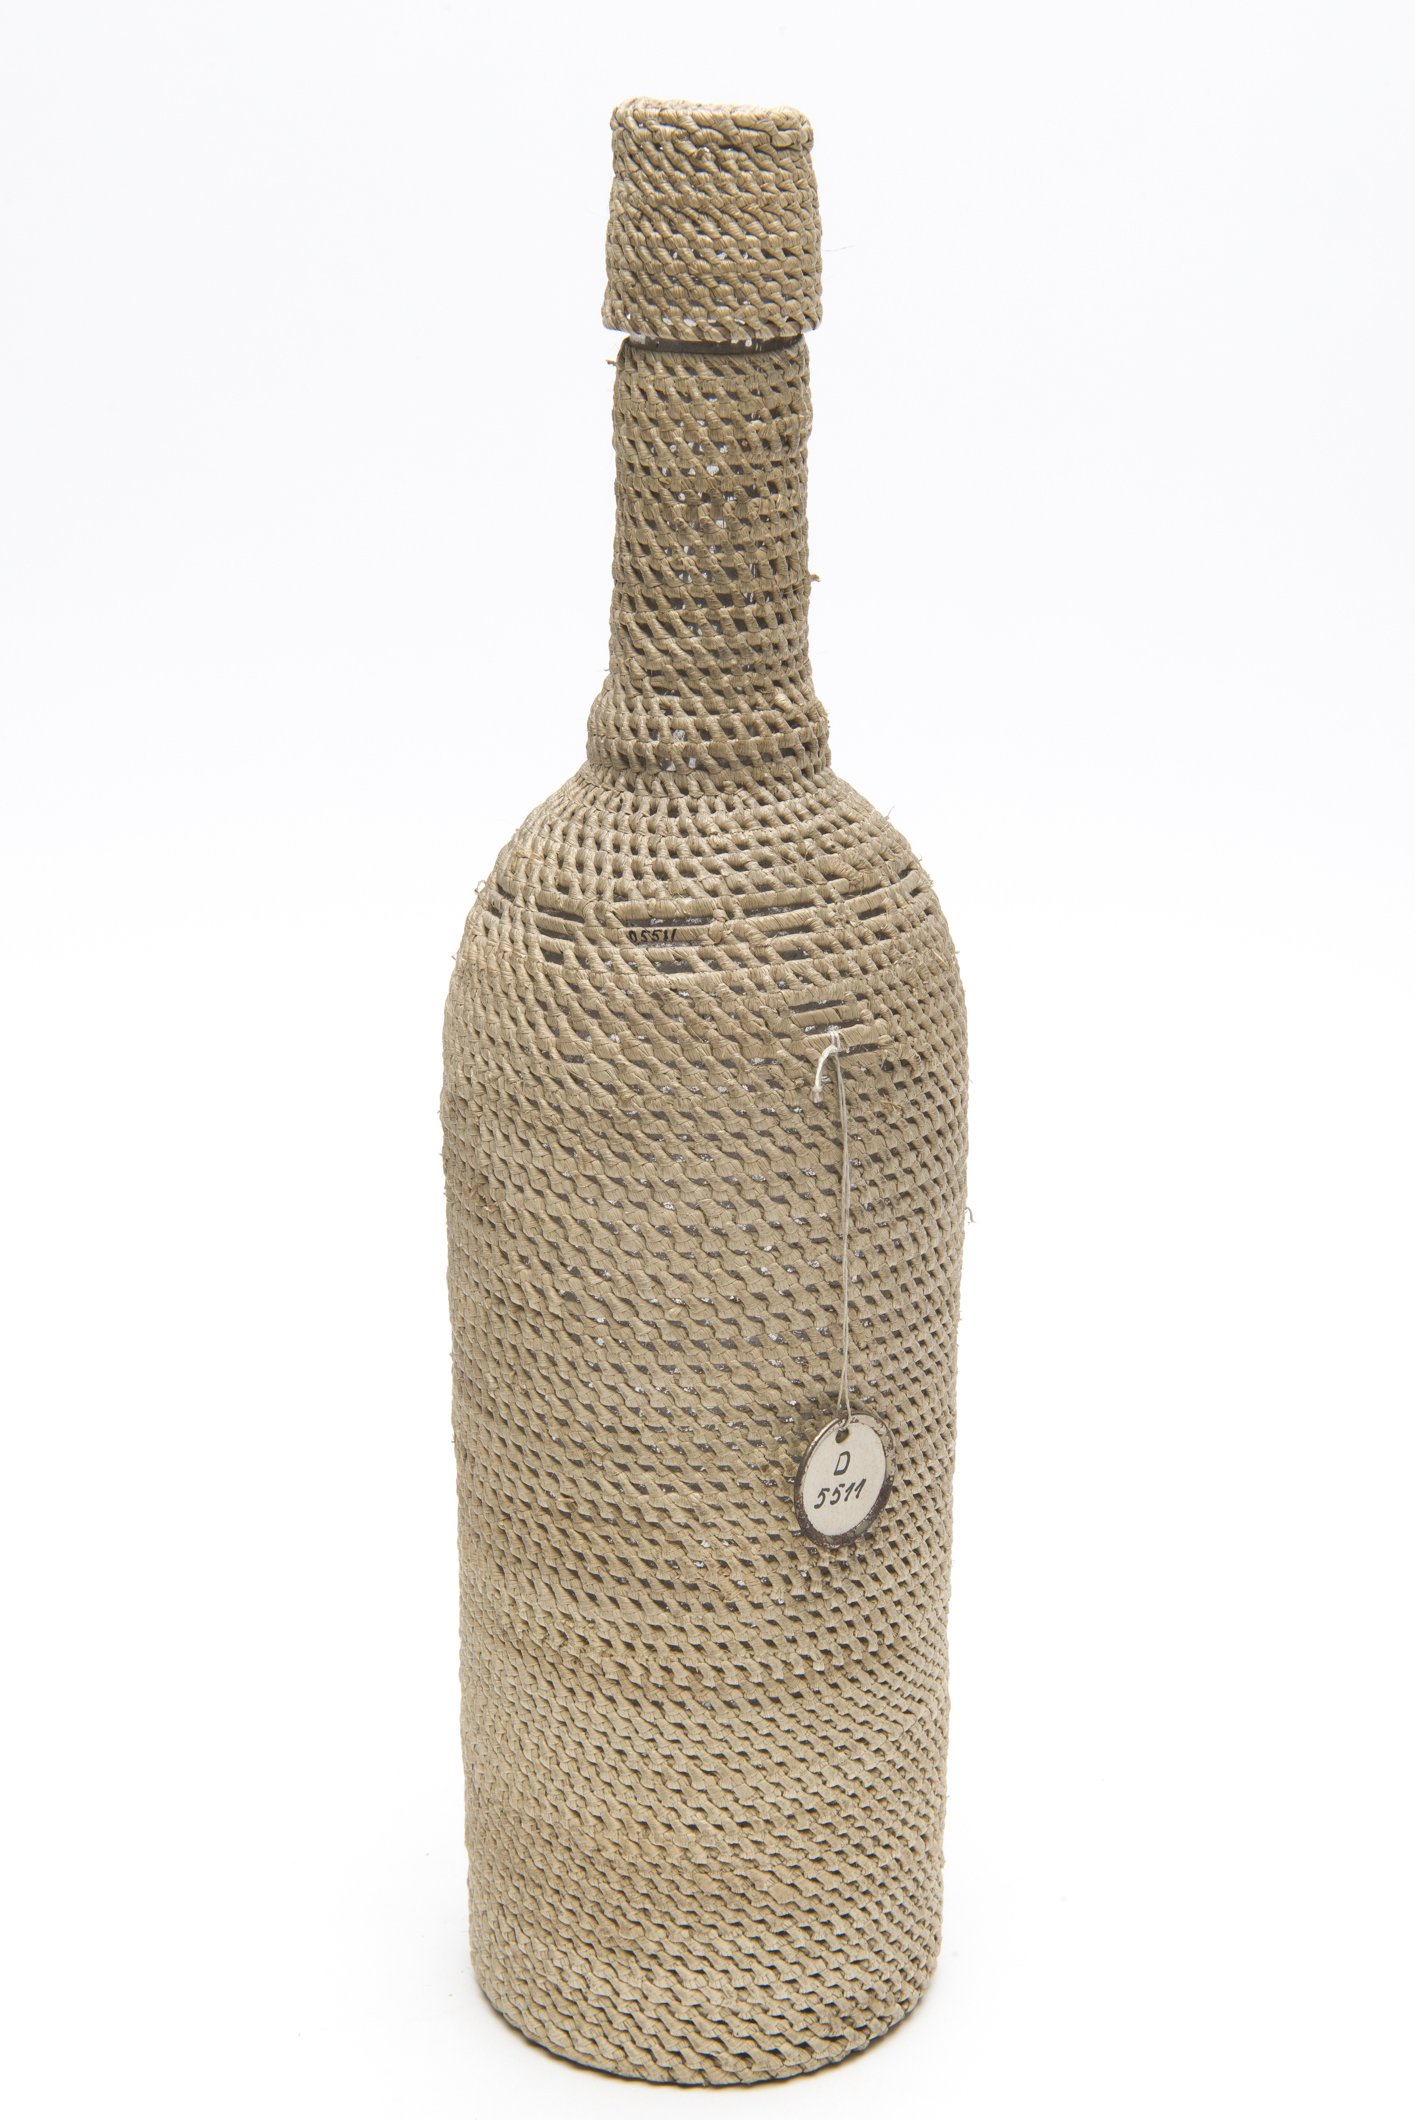 D05511 Flasche im Geflecht | woven bottle (Übersee-Museum Bremen CC BY-SA)